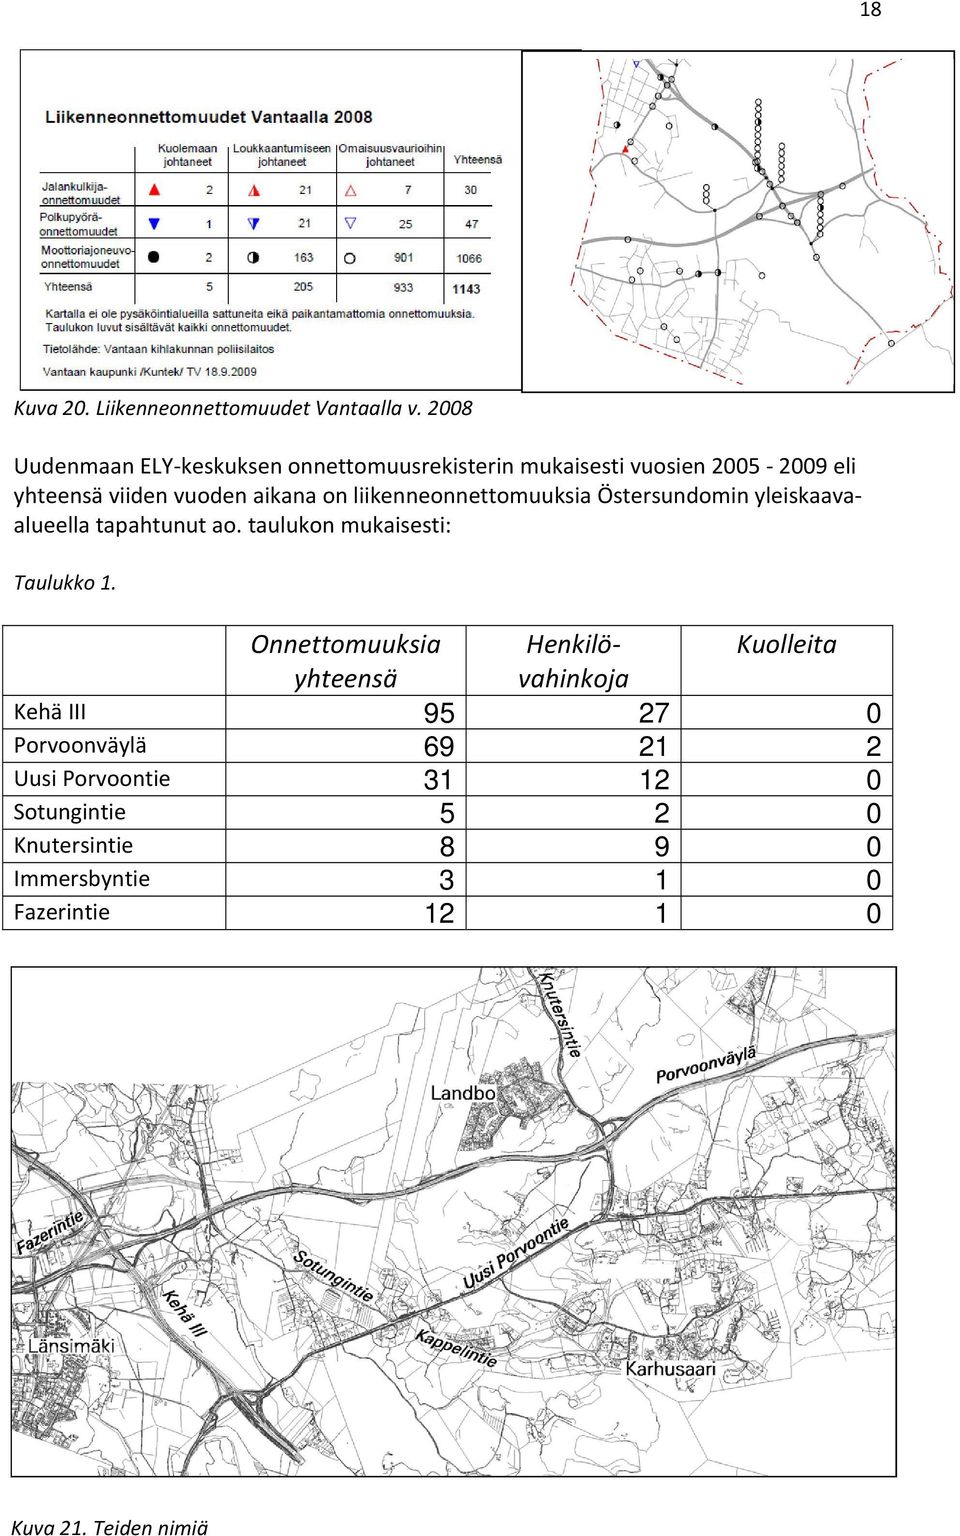 liikenneonnettomuuksia Östersundomin yleiskaavaalueella tapahtunut ao. taulukon mukaisesti: Taulukko 1.